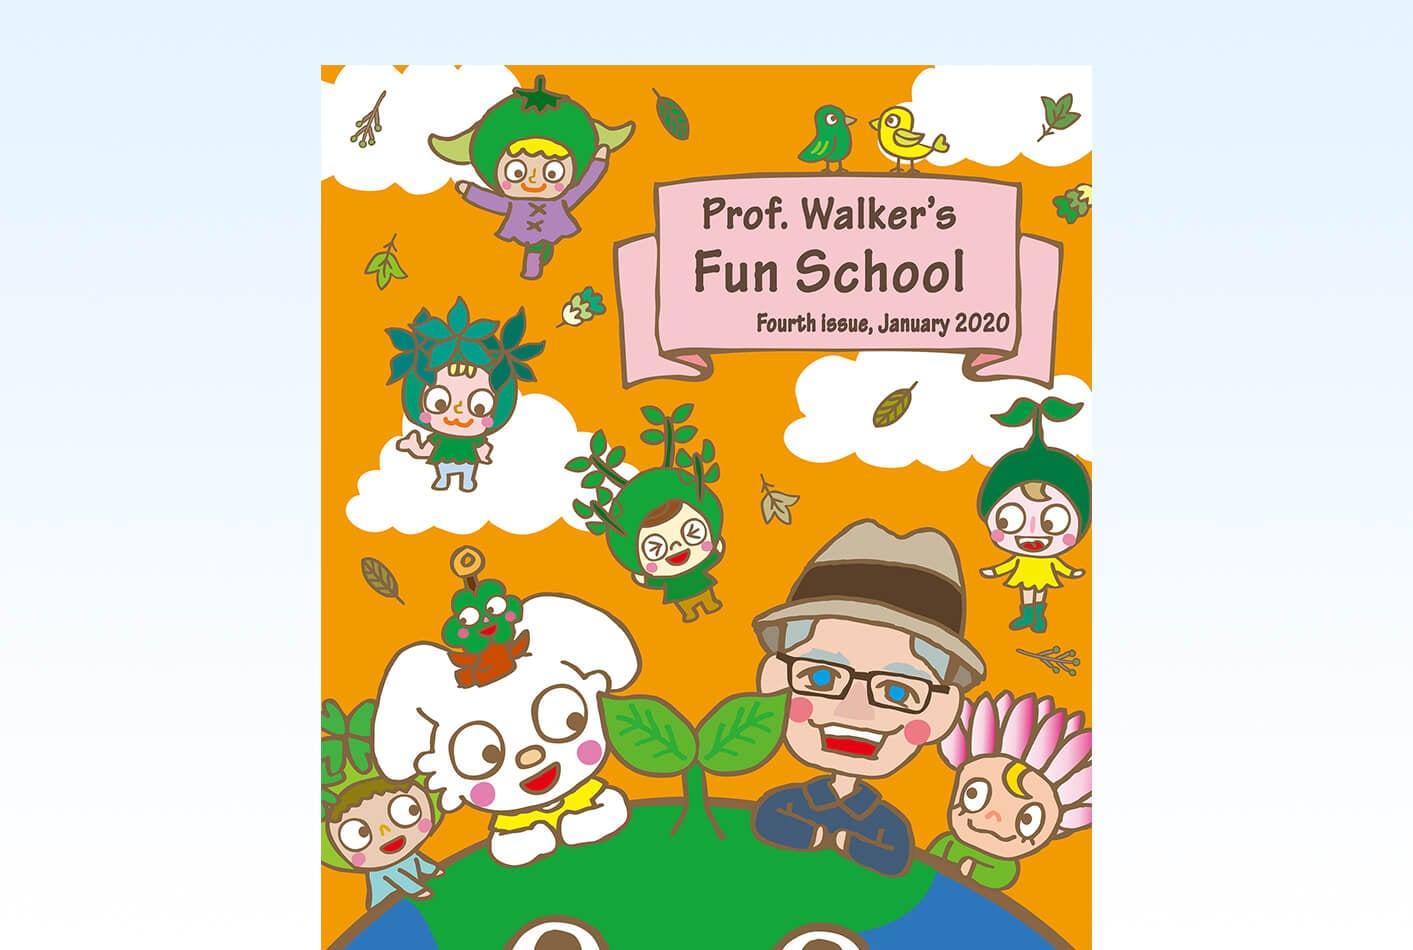 Prof. Walker's Fun School